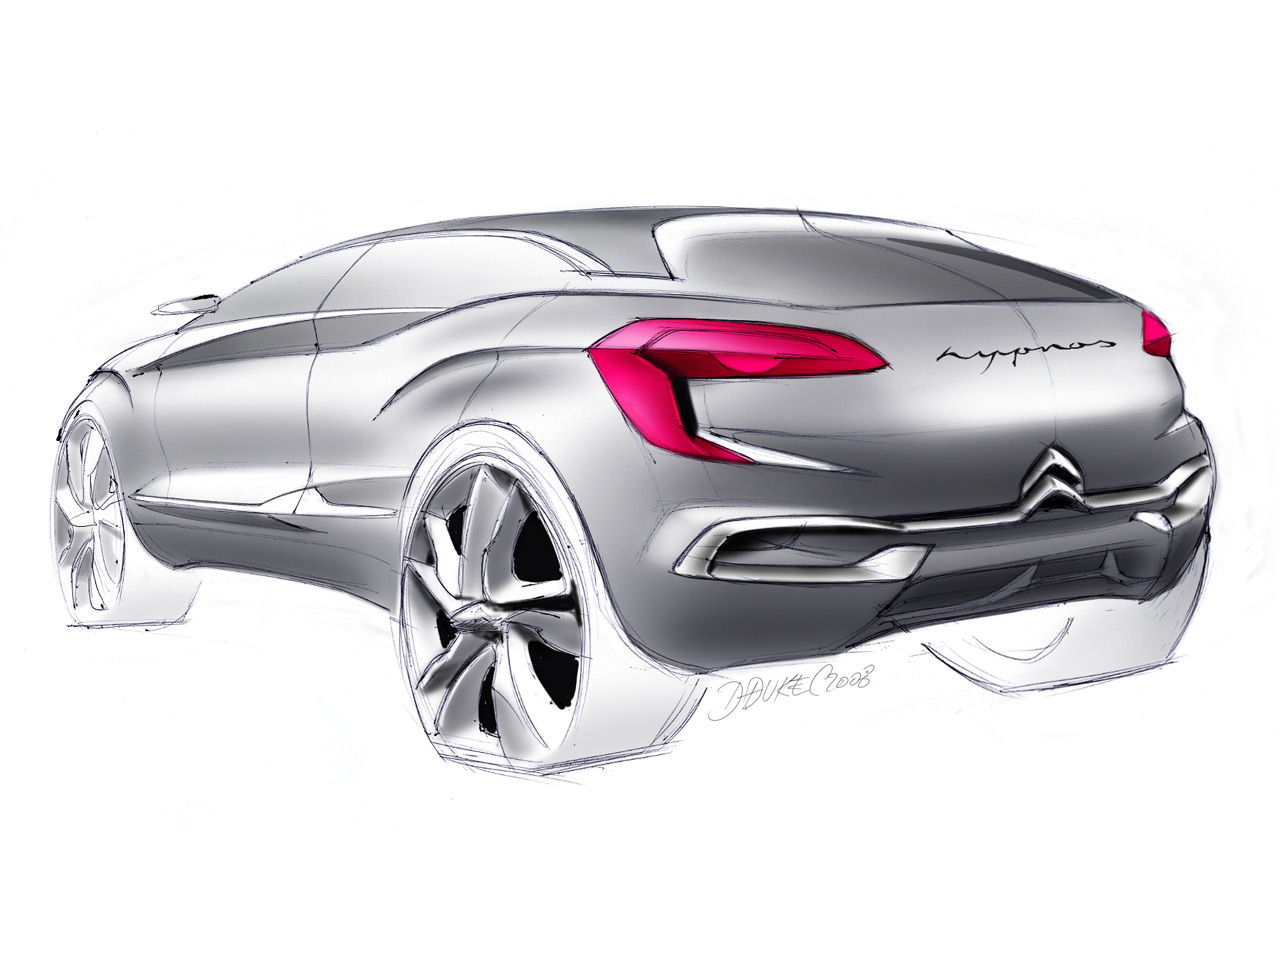 Citroen Hypnos Concept, 2008 - Design Sketch